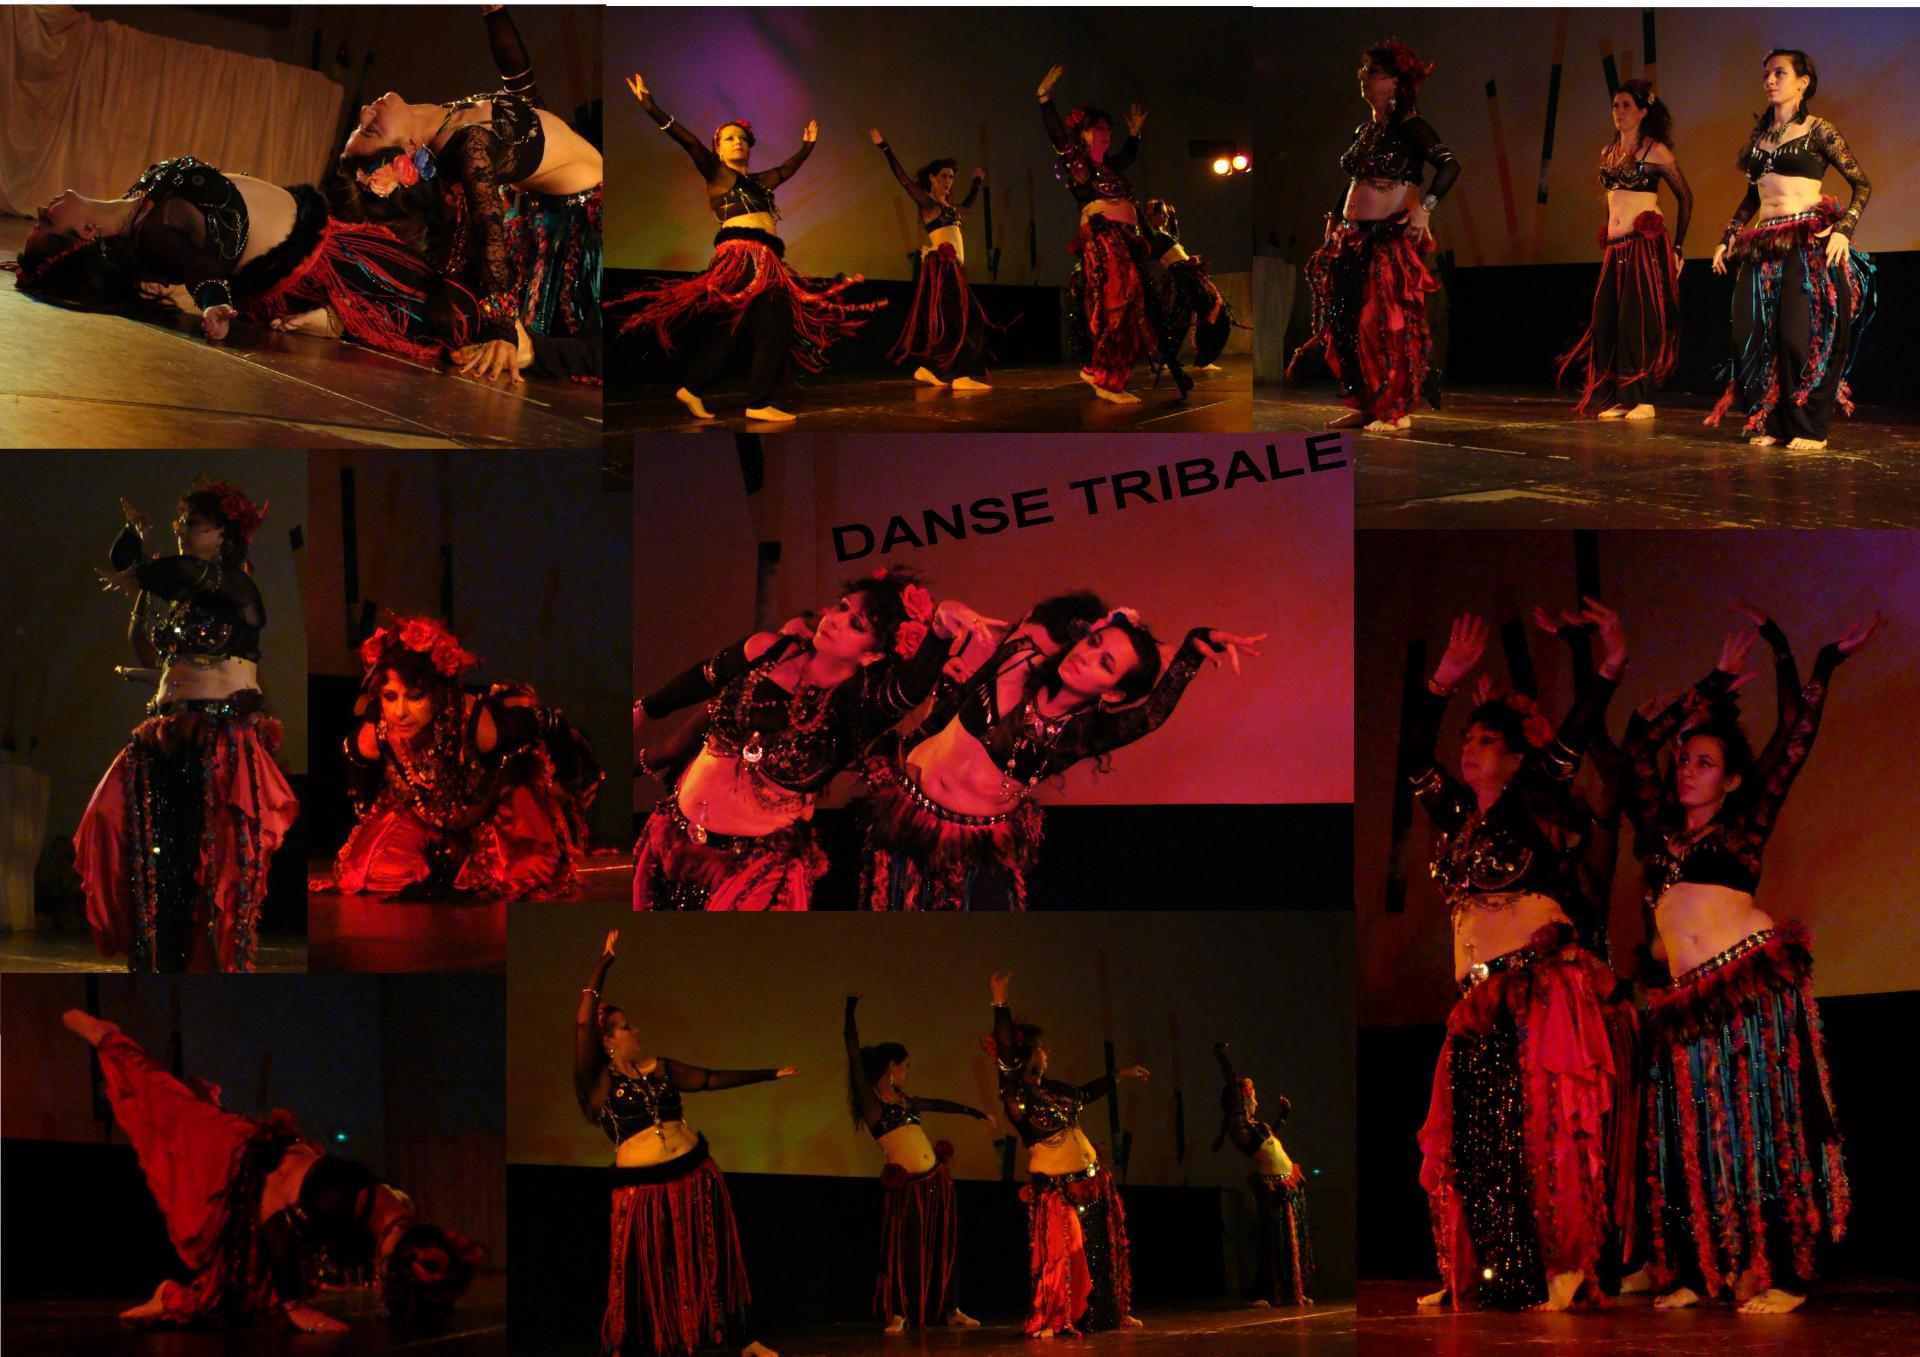 Danse orientale tribale kopytko sheherazade